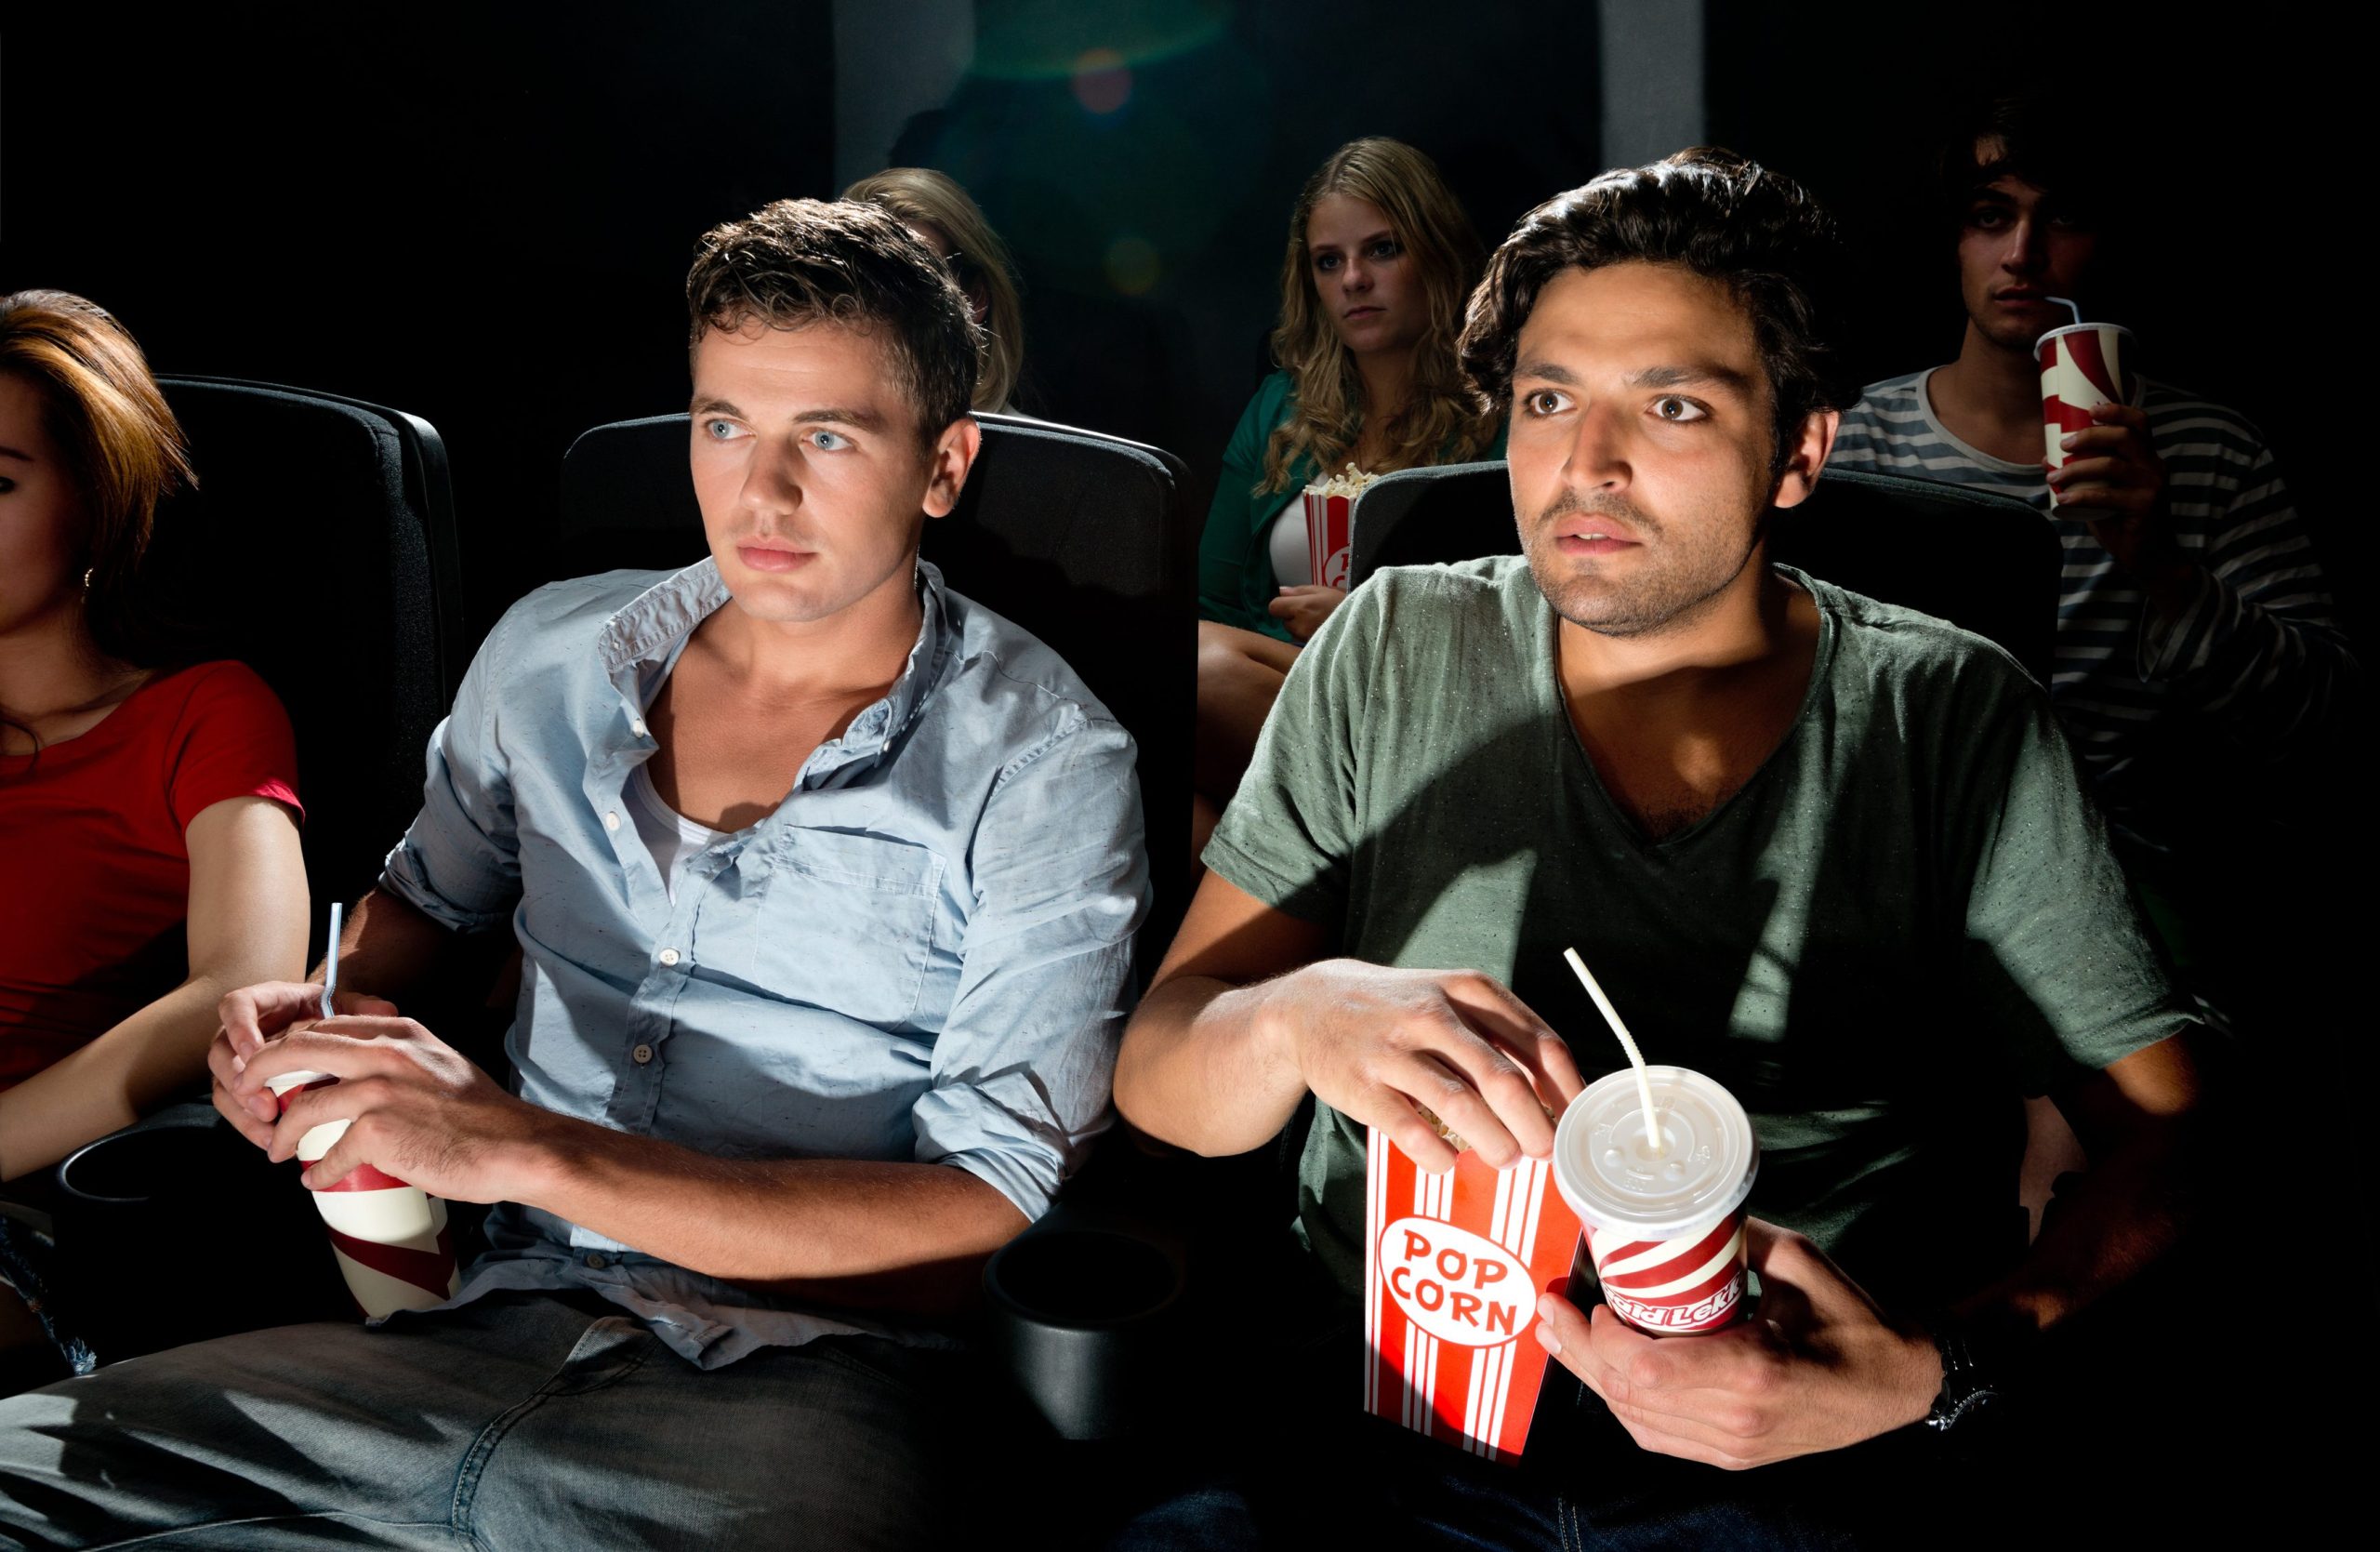 Friends watch a movie. Парень в кинотеатре. Два друга в кинотеатре. Друзья сидят в кинотеатре. Два парня в кинотеатре.